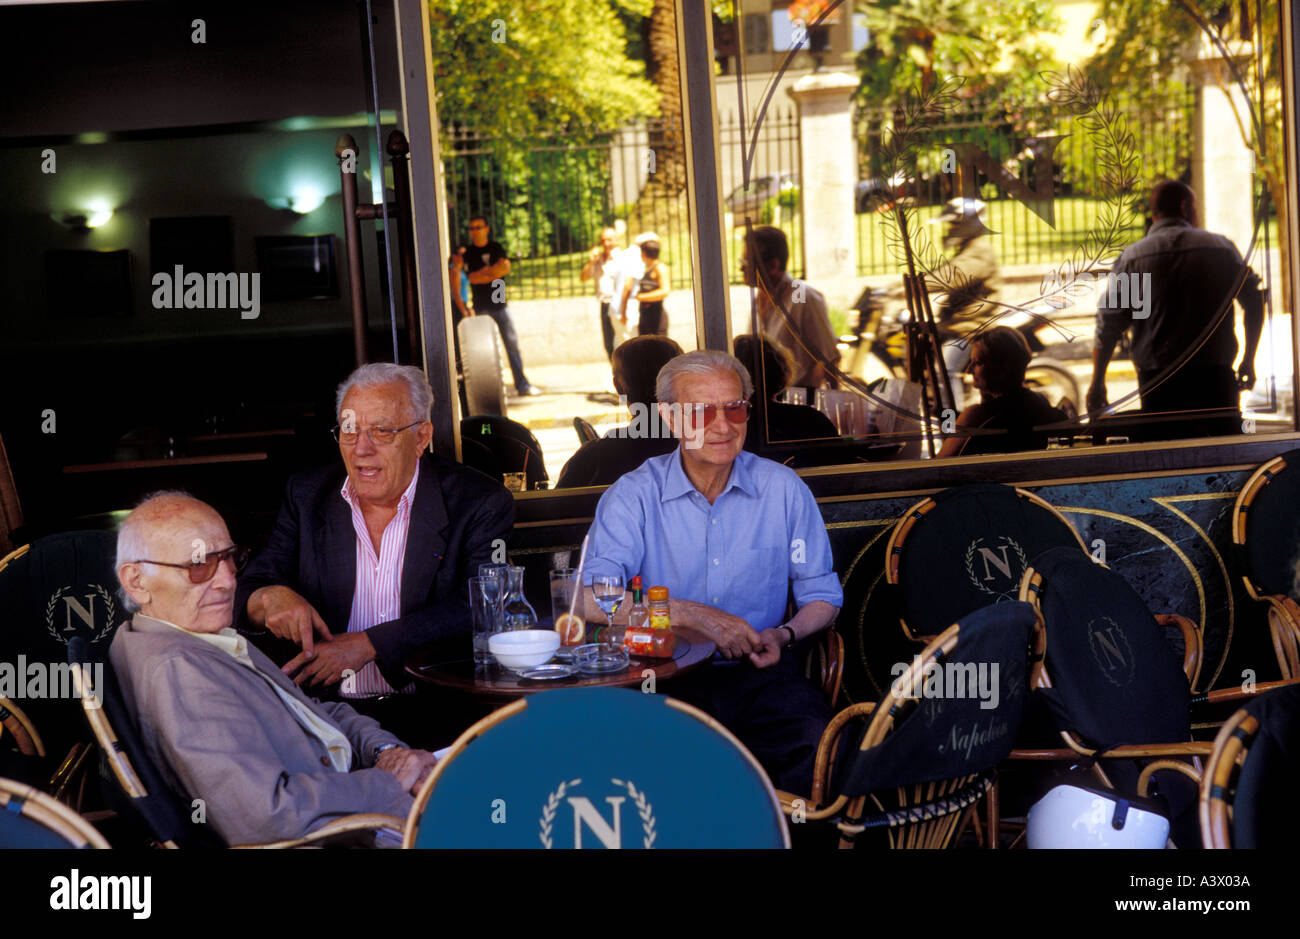 Les personnes âgées assis au café Napoléon à Ajaccio Corse France Banque D'Images